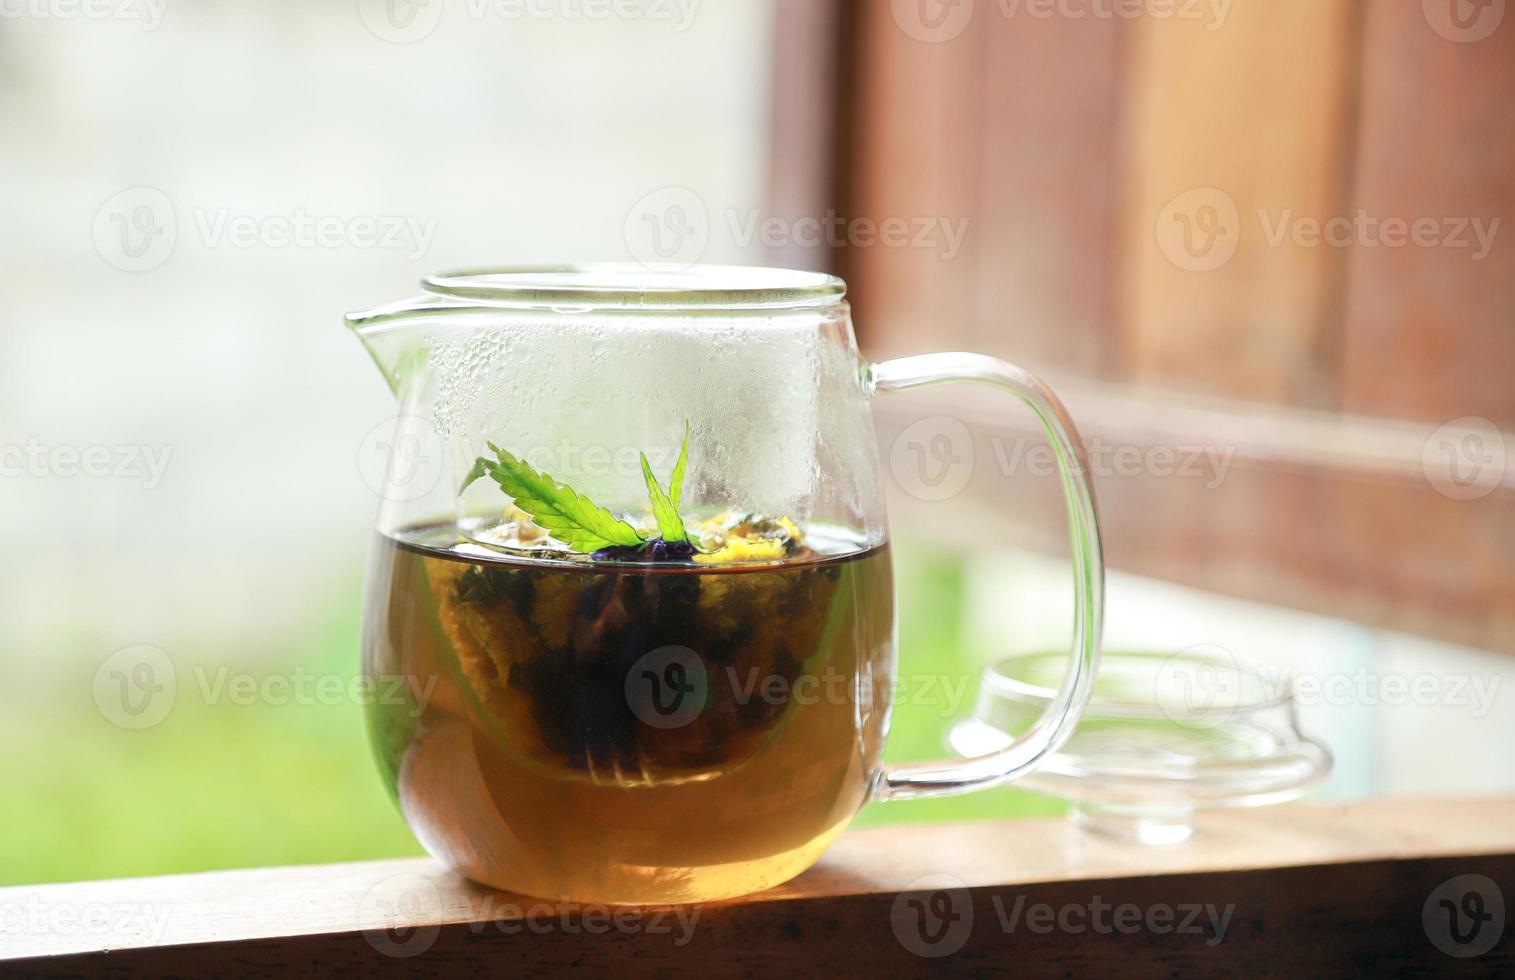 bloementhee in glazen pot met cannabisblad voor gezond aroma drinken foto